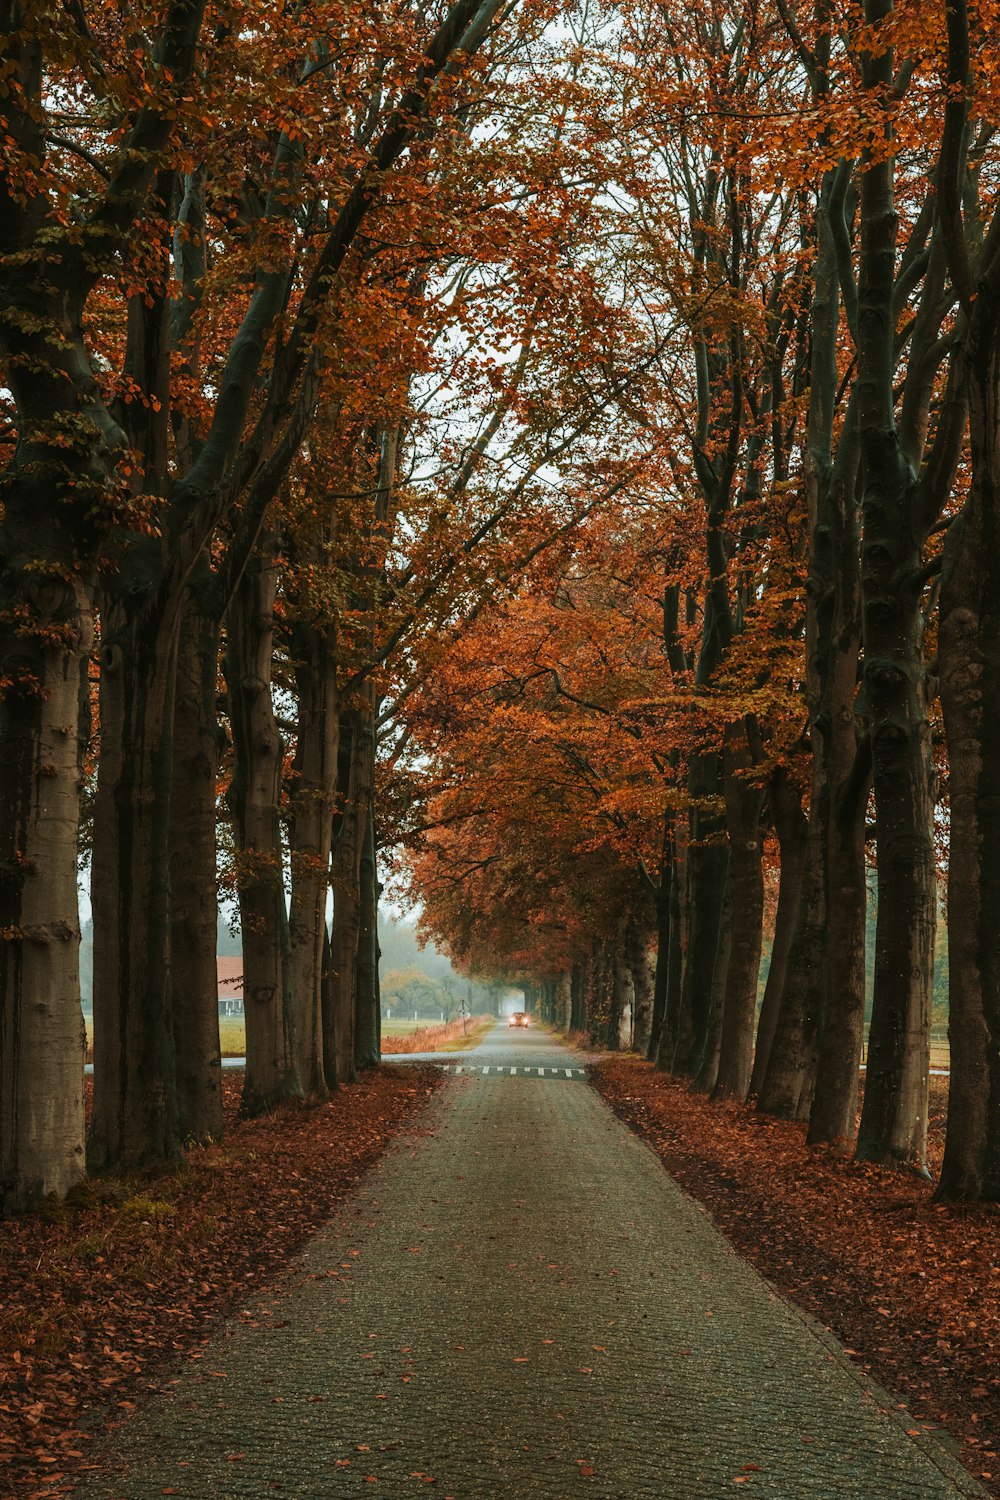 gray asphalt road between brown trees during daytime